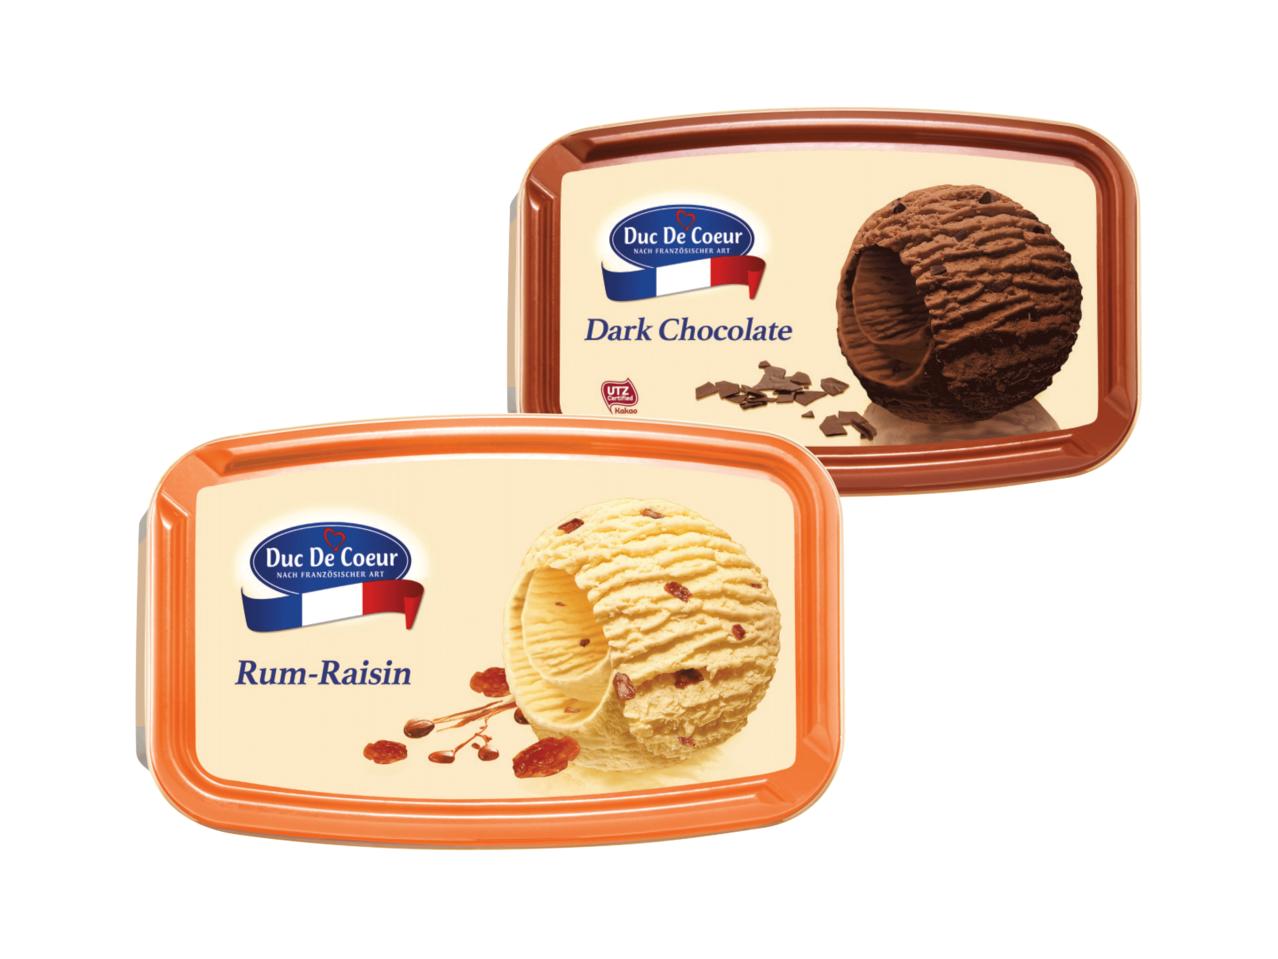 DUC DE COEUR Premium Ice Cream